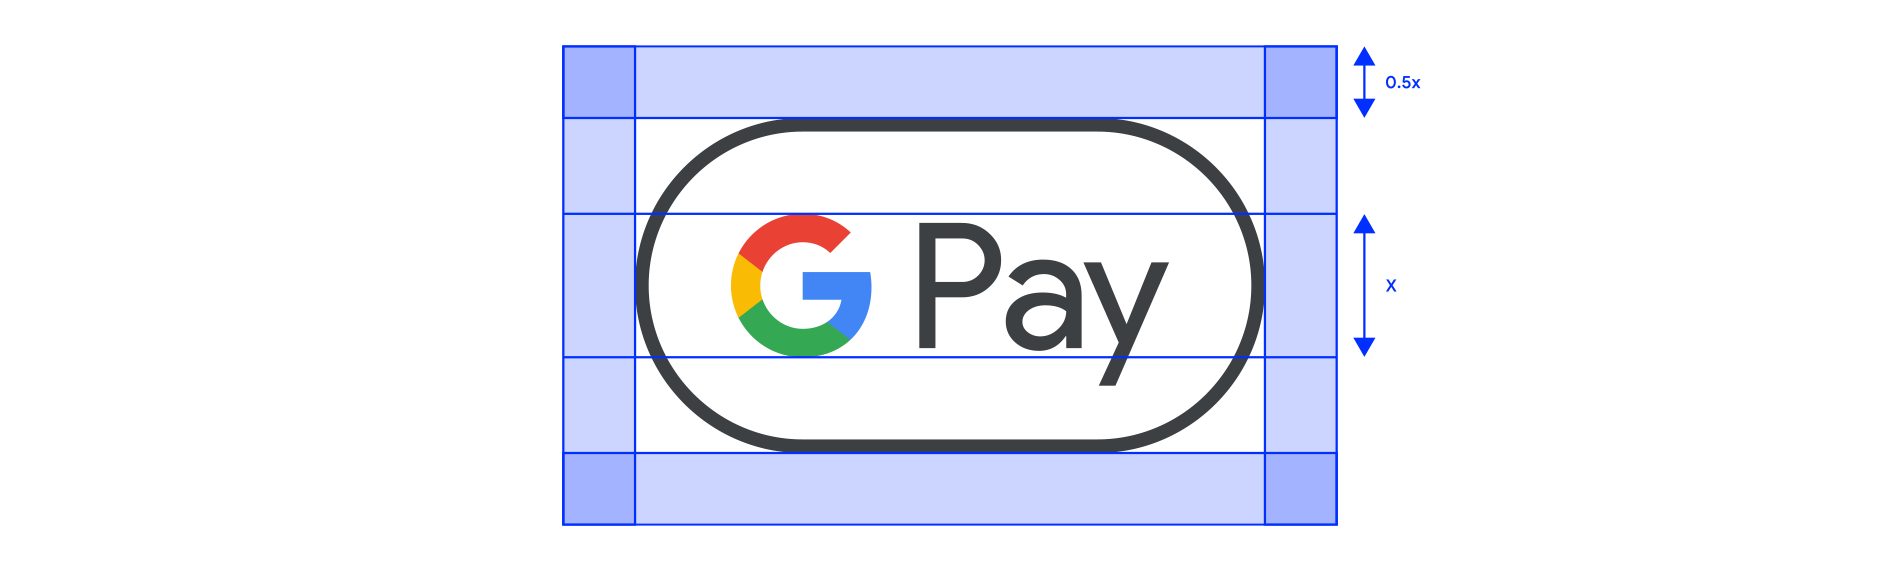 Exemplo de espaço livre da marca Google Pay